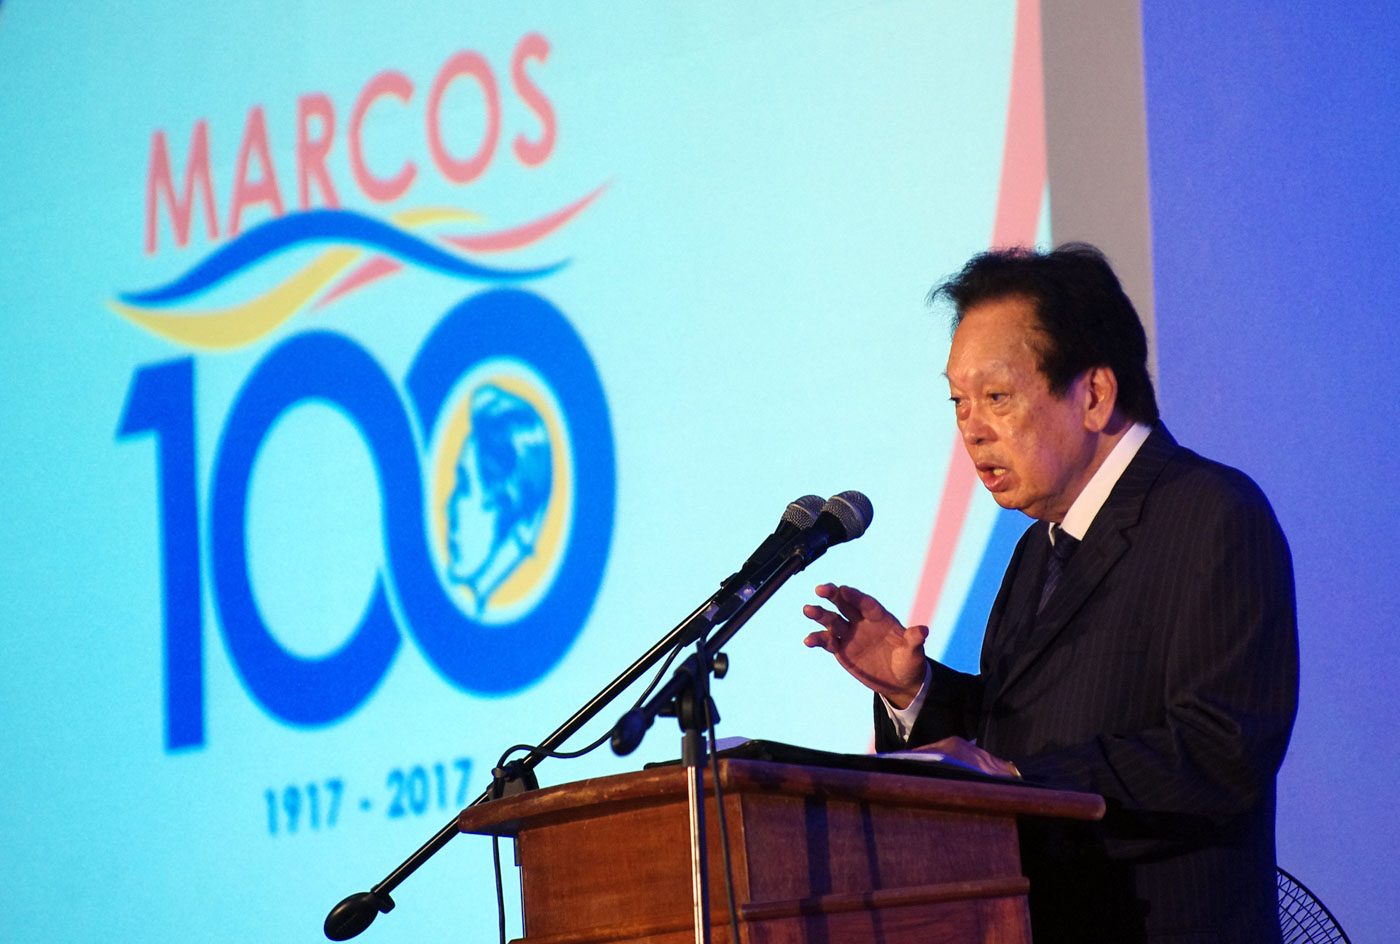 Estelito Mendoza defends Marcos martial law, says SC backed it